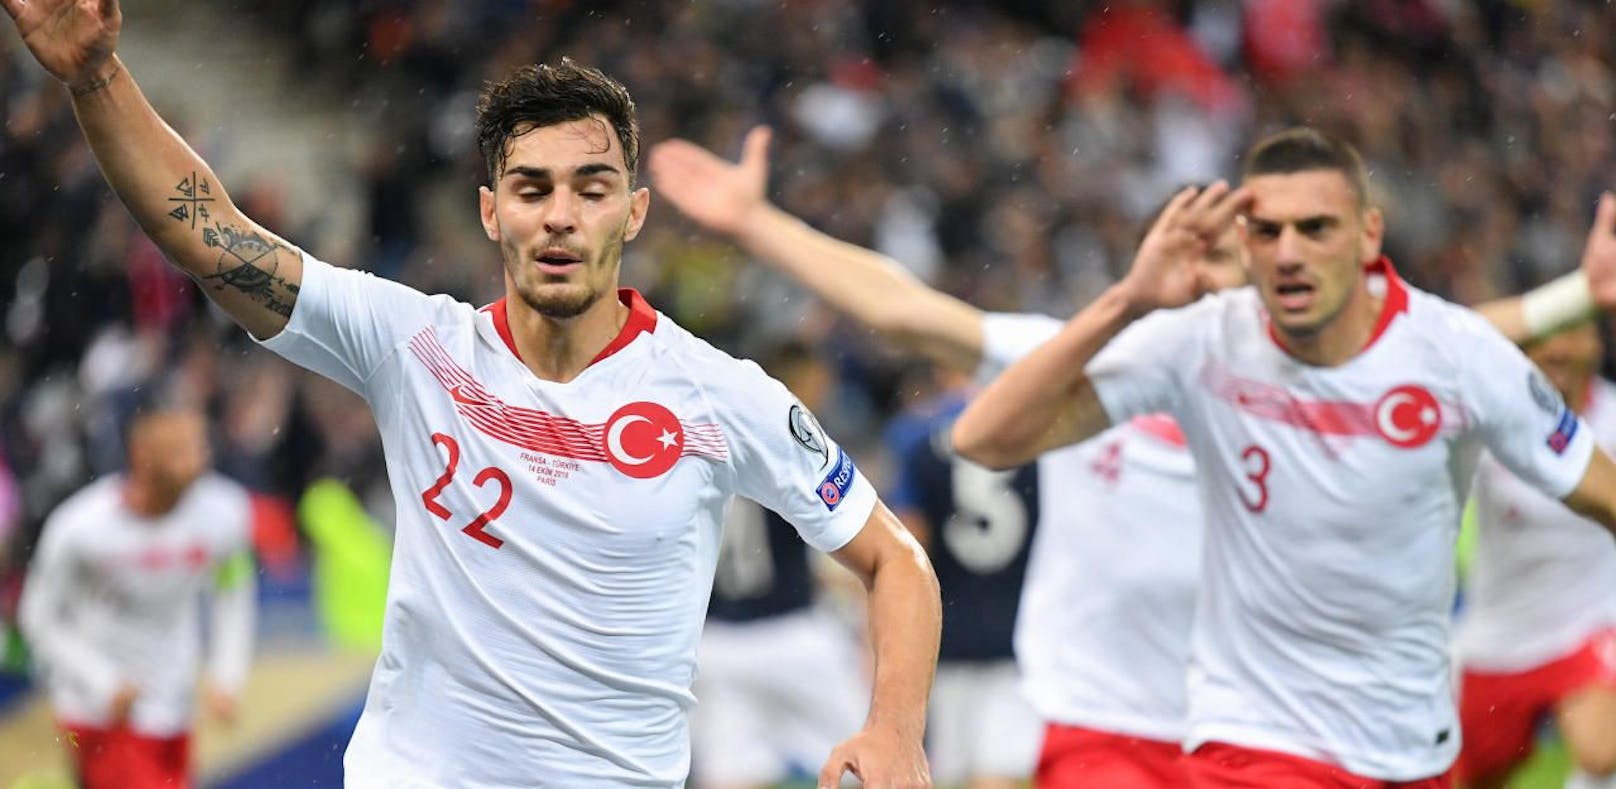 Kaan Ayhan feiert sein Tor gegen Frankreich, ohne Salut.